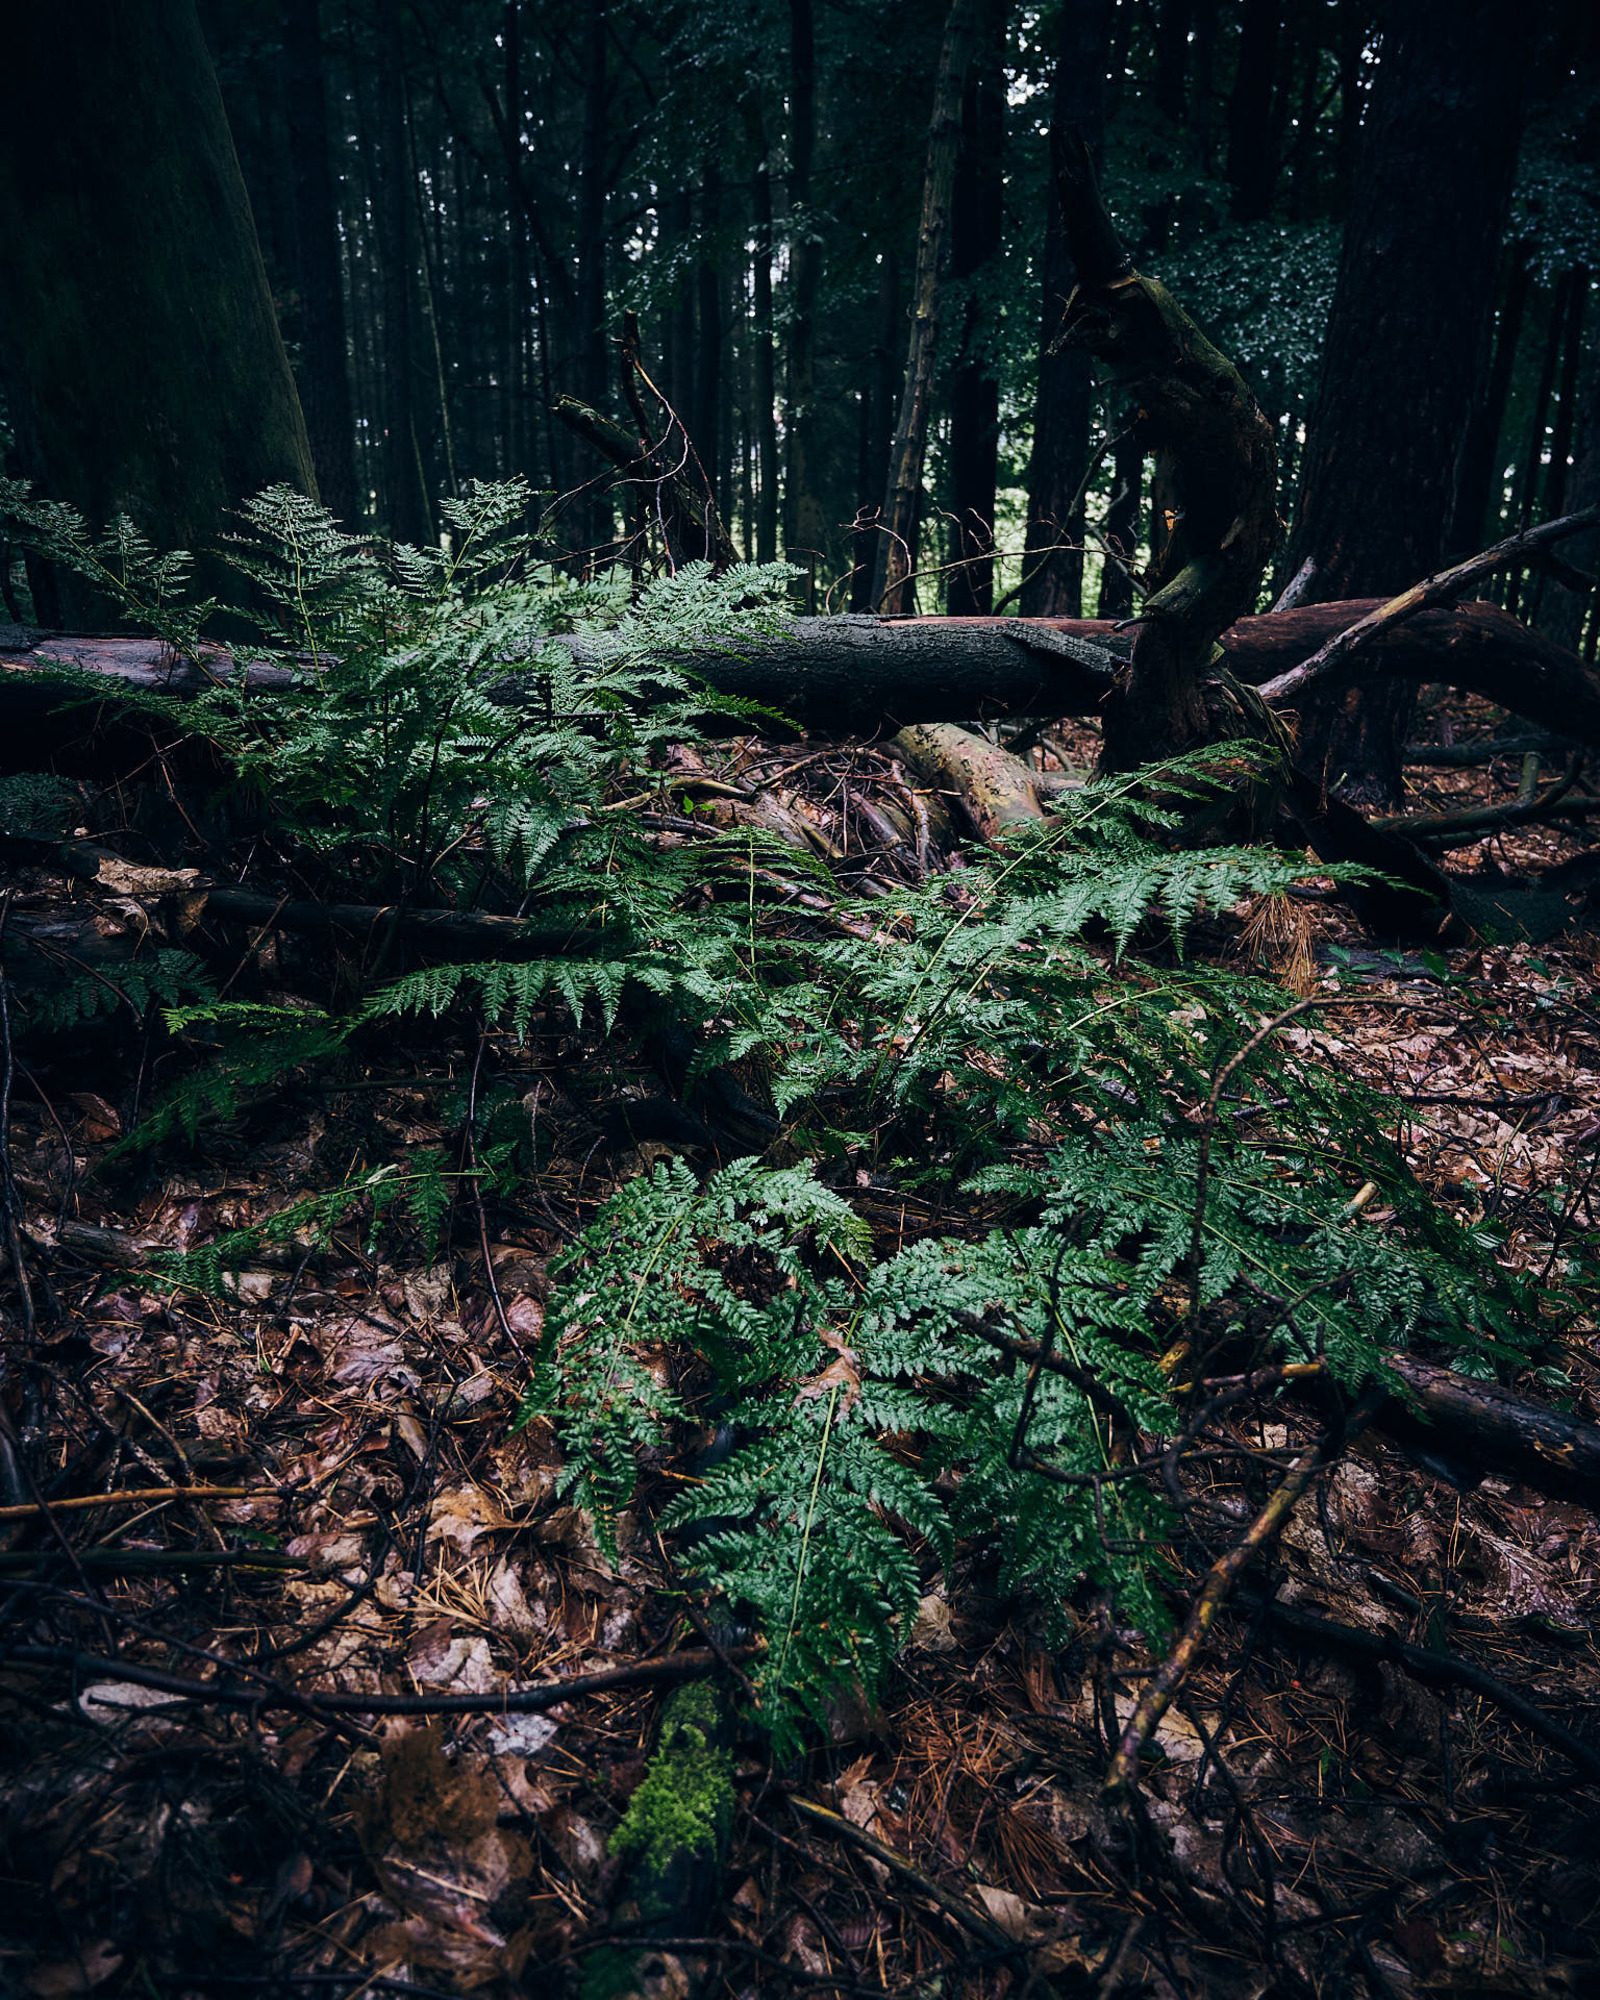 Natur, wie sie aussieht wenn man sie einfach machen lässt und nicht alles Totholz aus dem Wald entfernt. Sieht etwas chaotisch aus, bietet aber Lebensraum für viele Organismen.